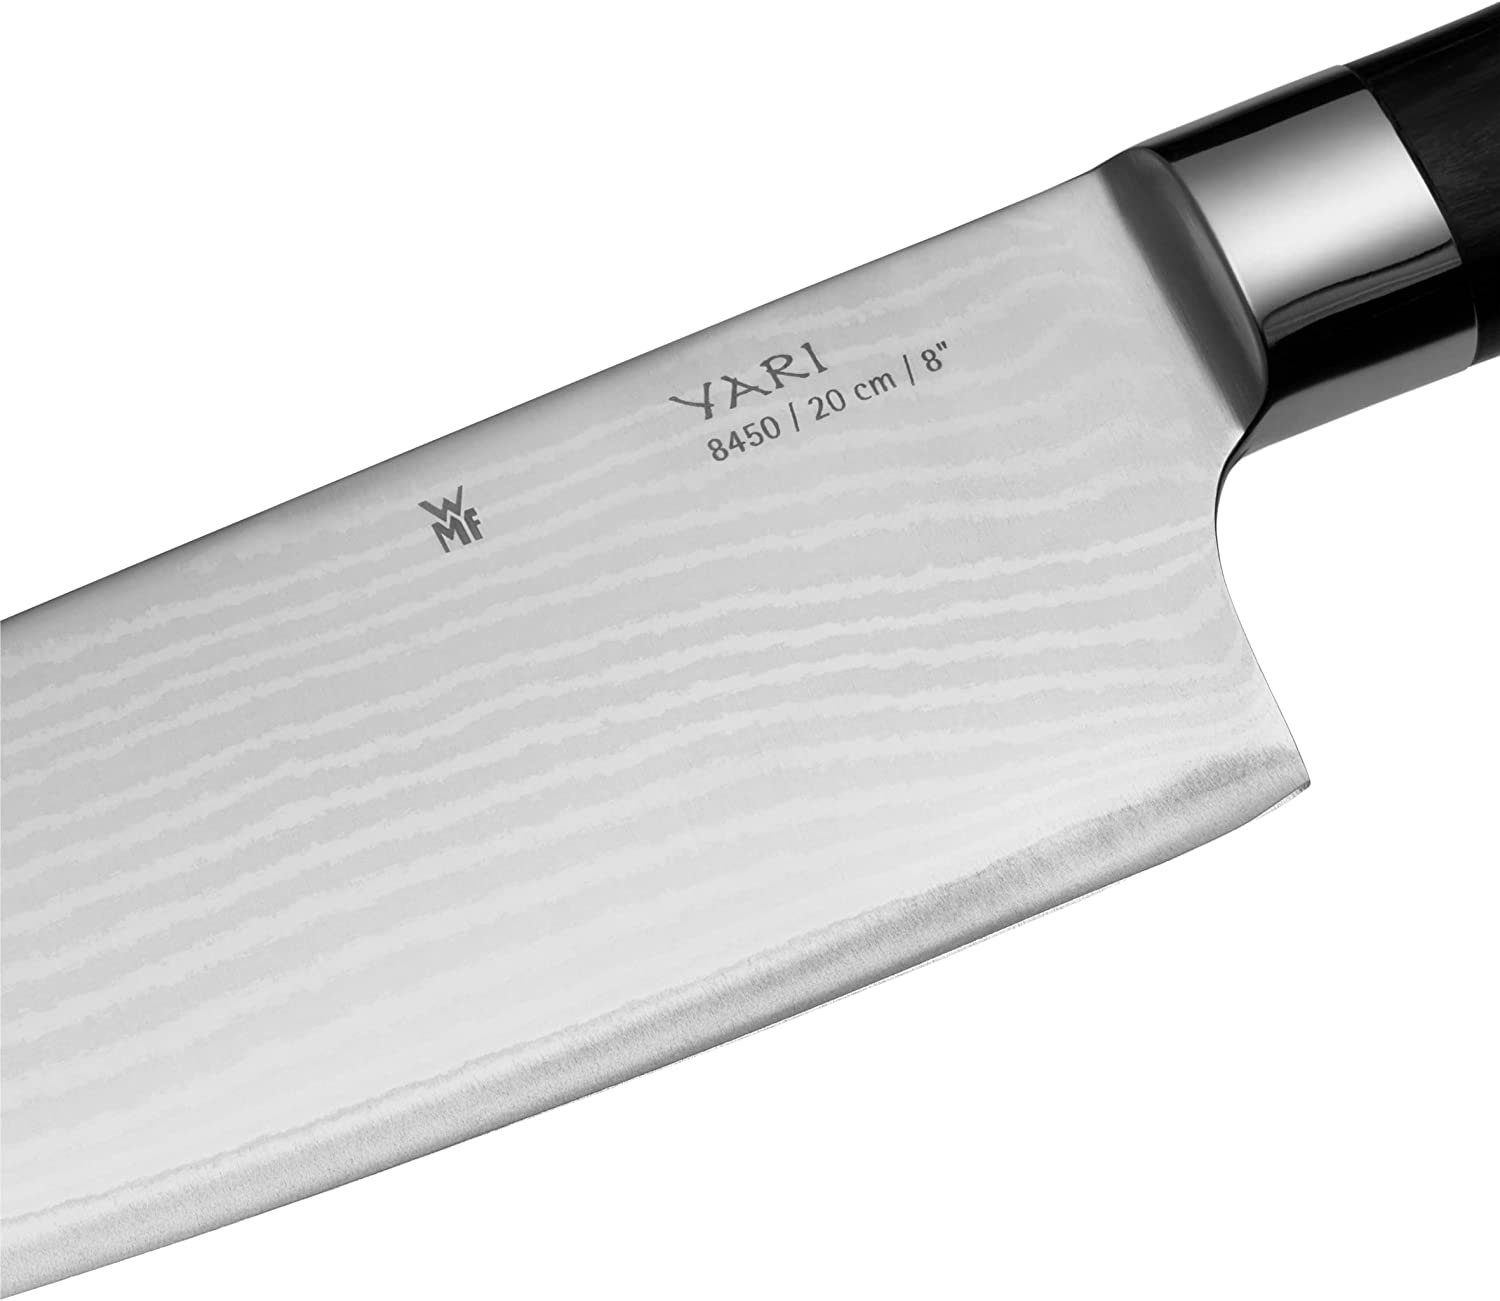 F. Dick 1905 Set (3-Teiliges Messerset aus hochwertigen Messern